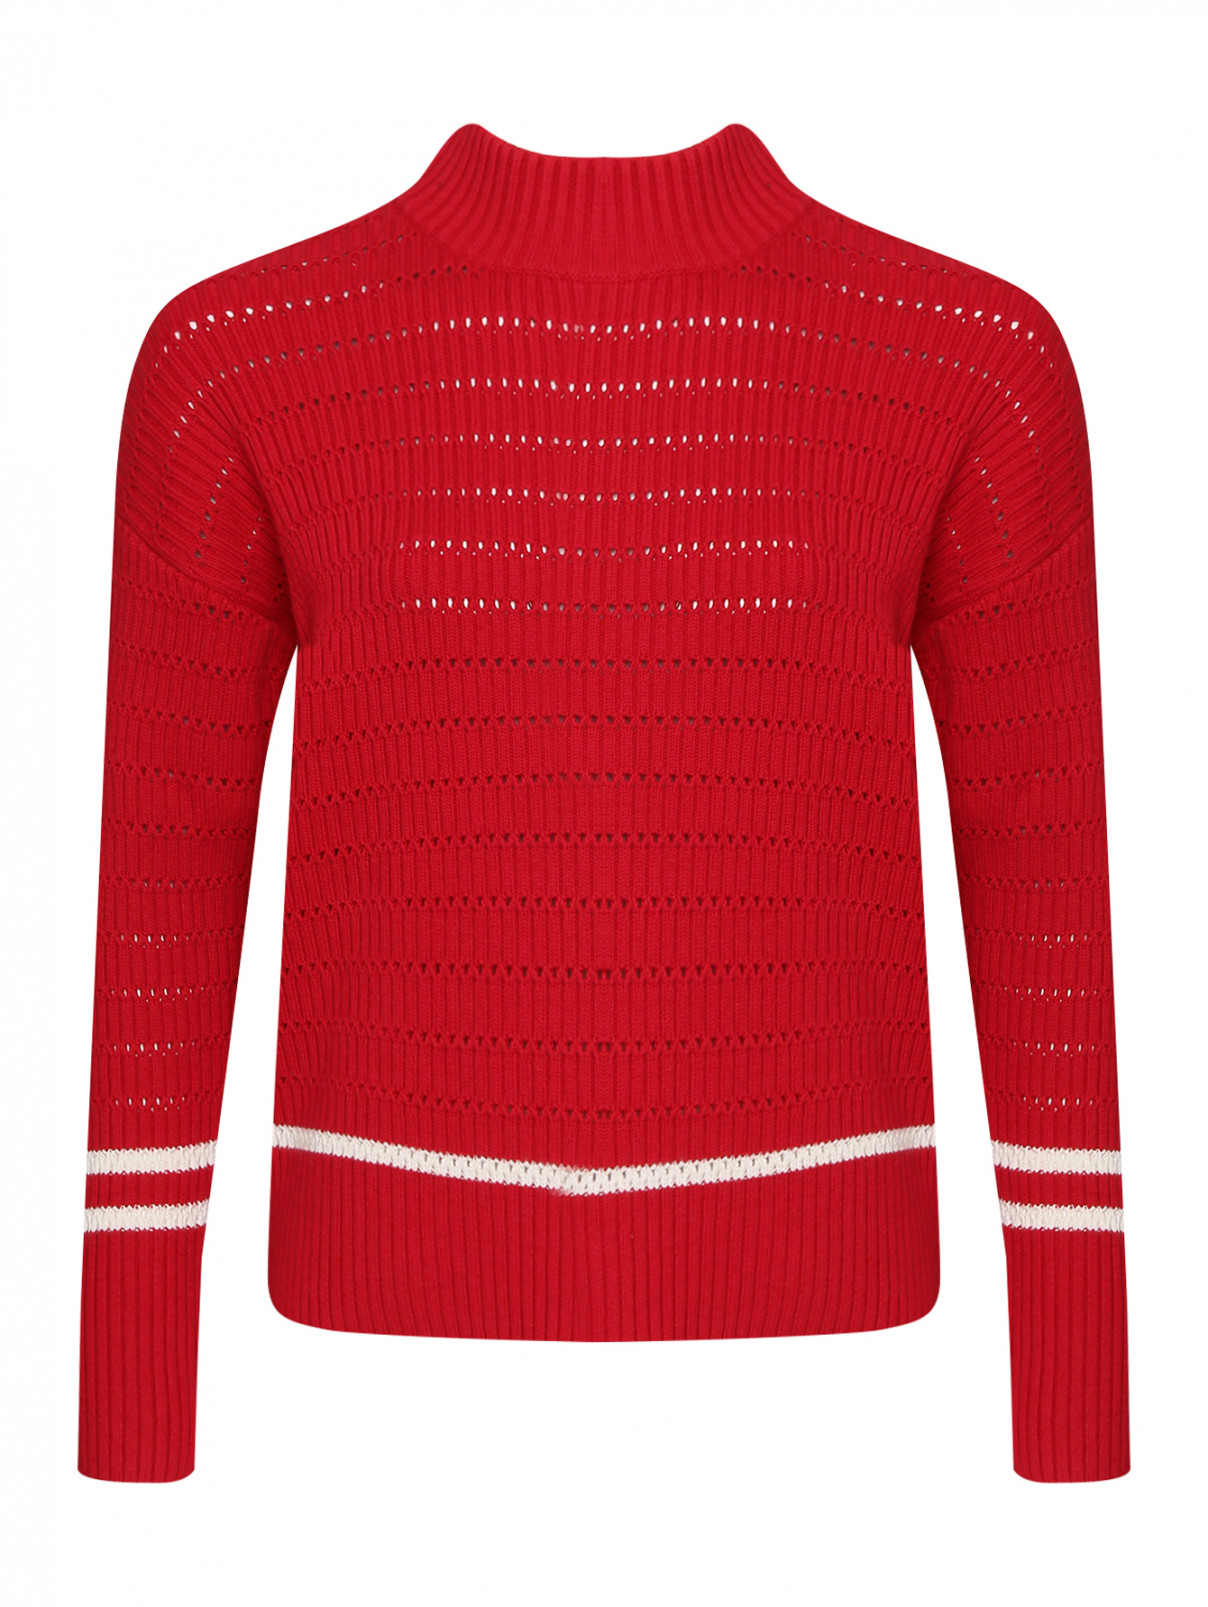 Джемпер из хлопка и шерсти с контрастной отделкой Tommy Hilfiger  –  Общий вид  – Цвет:  Красный